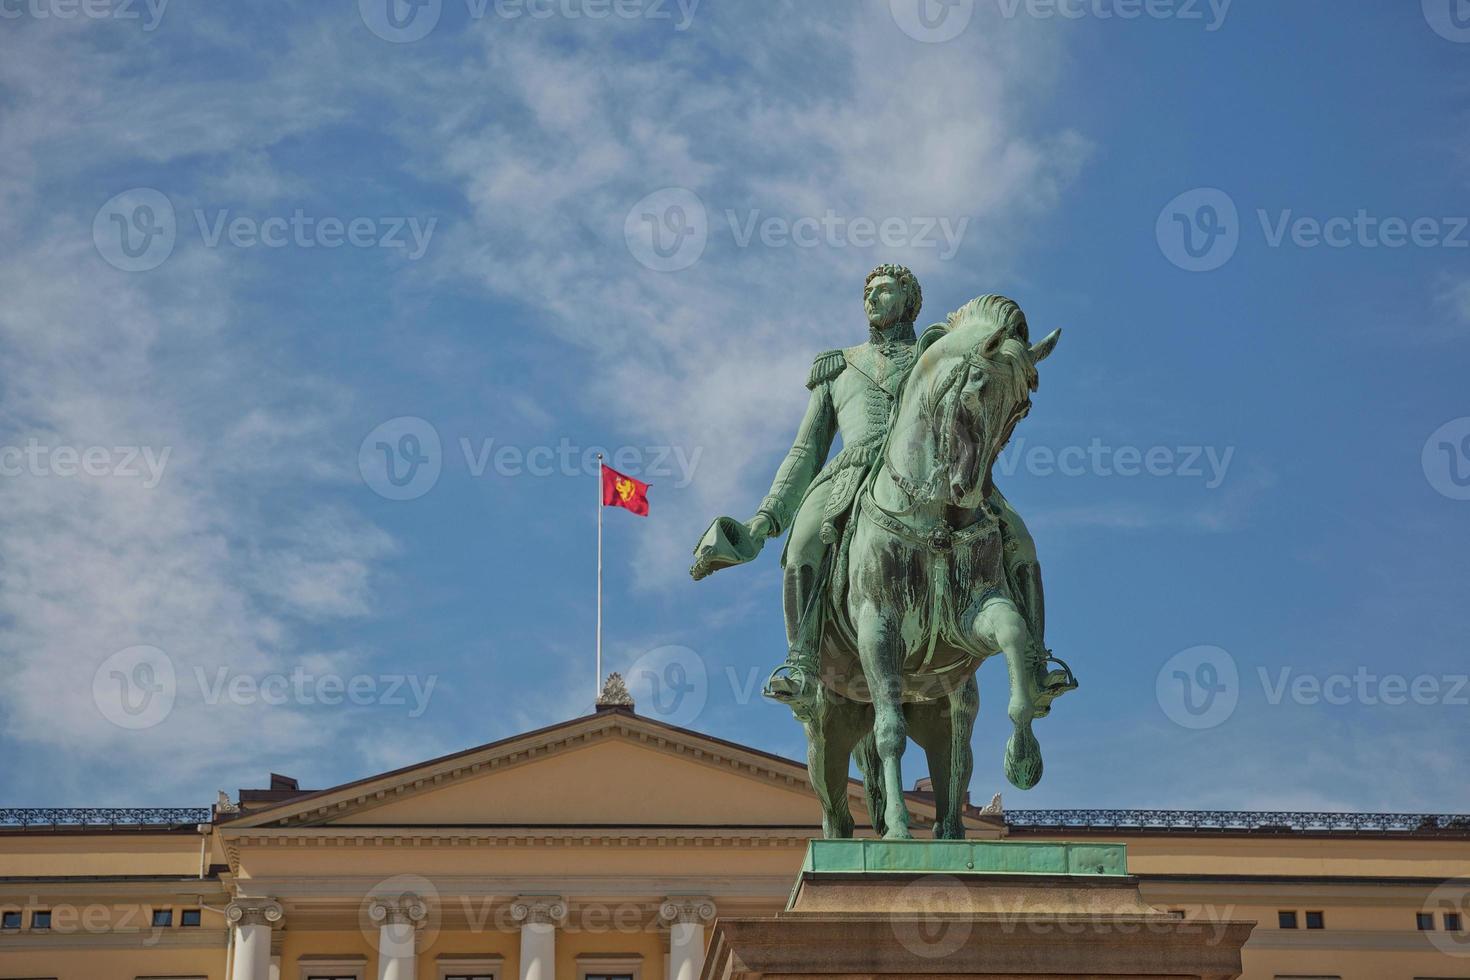 der königliche palast und die statue von könig karl johan xiv in oslo, norwegen foto